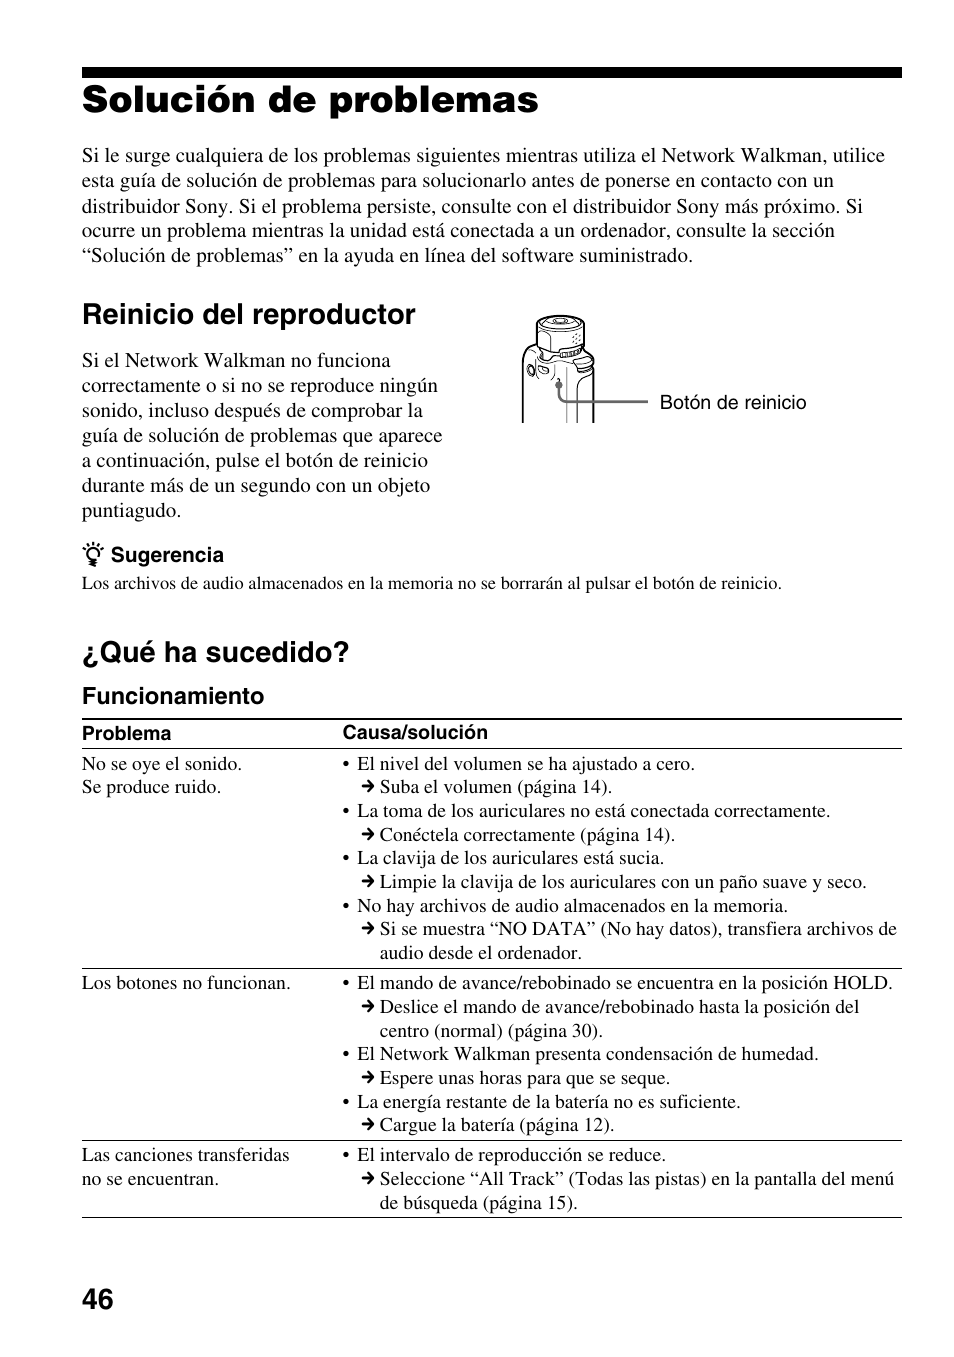 Solución de problemas, Reinicio del reproductor, Qué ha sucedido | Reinicio del reproductor ¿qué ha sucedido | Sony NW-E503 Manual del usuario | Página 46 / 59